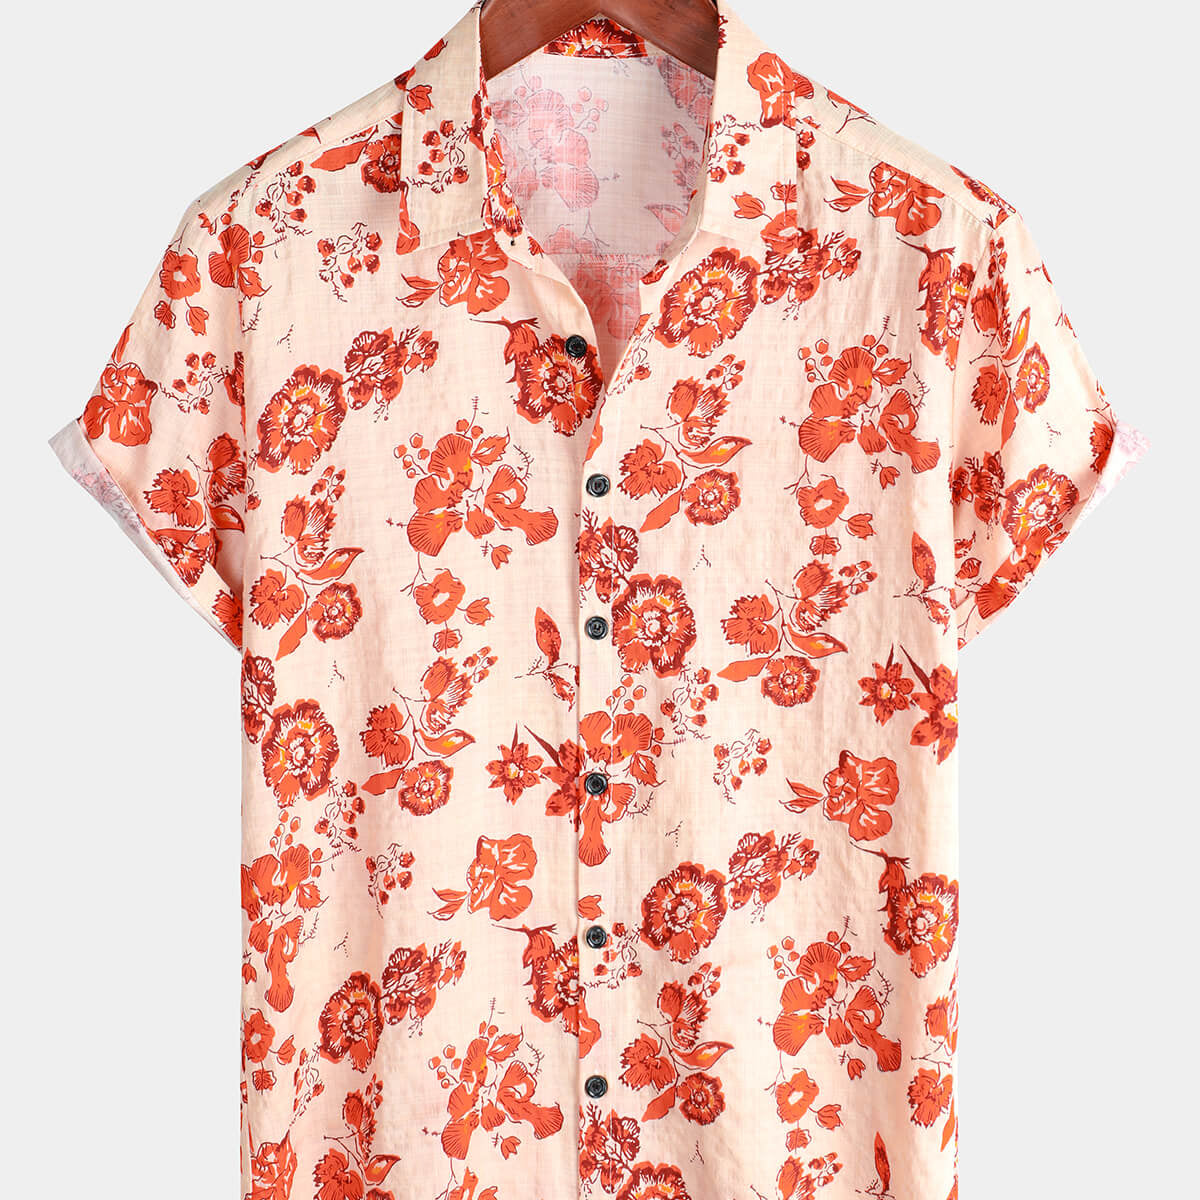 Men's Cotton Floral Hawaiian Short Sleeve Button Up Summer Shirt